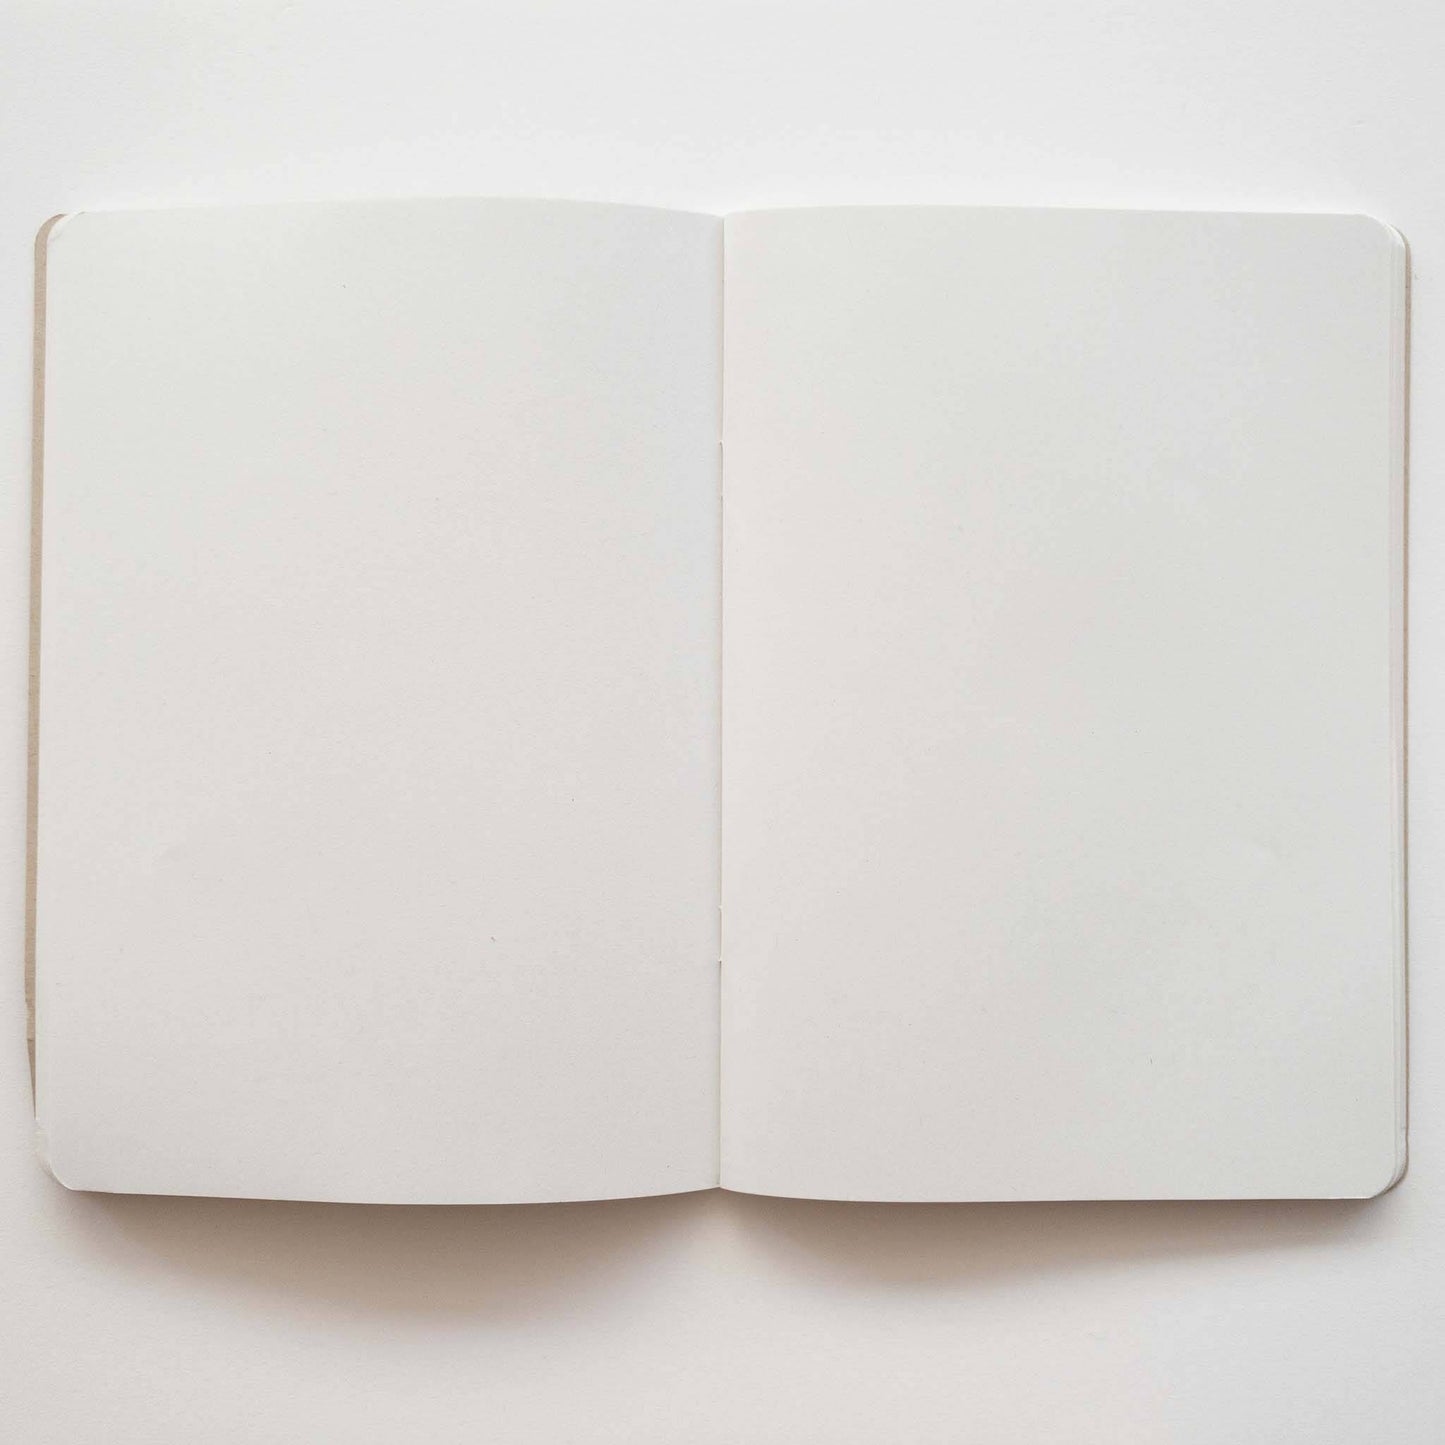 Kiwi Notebook